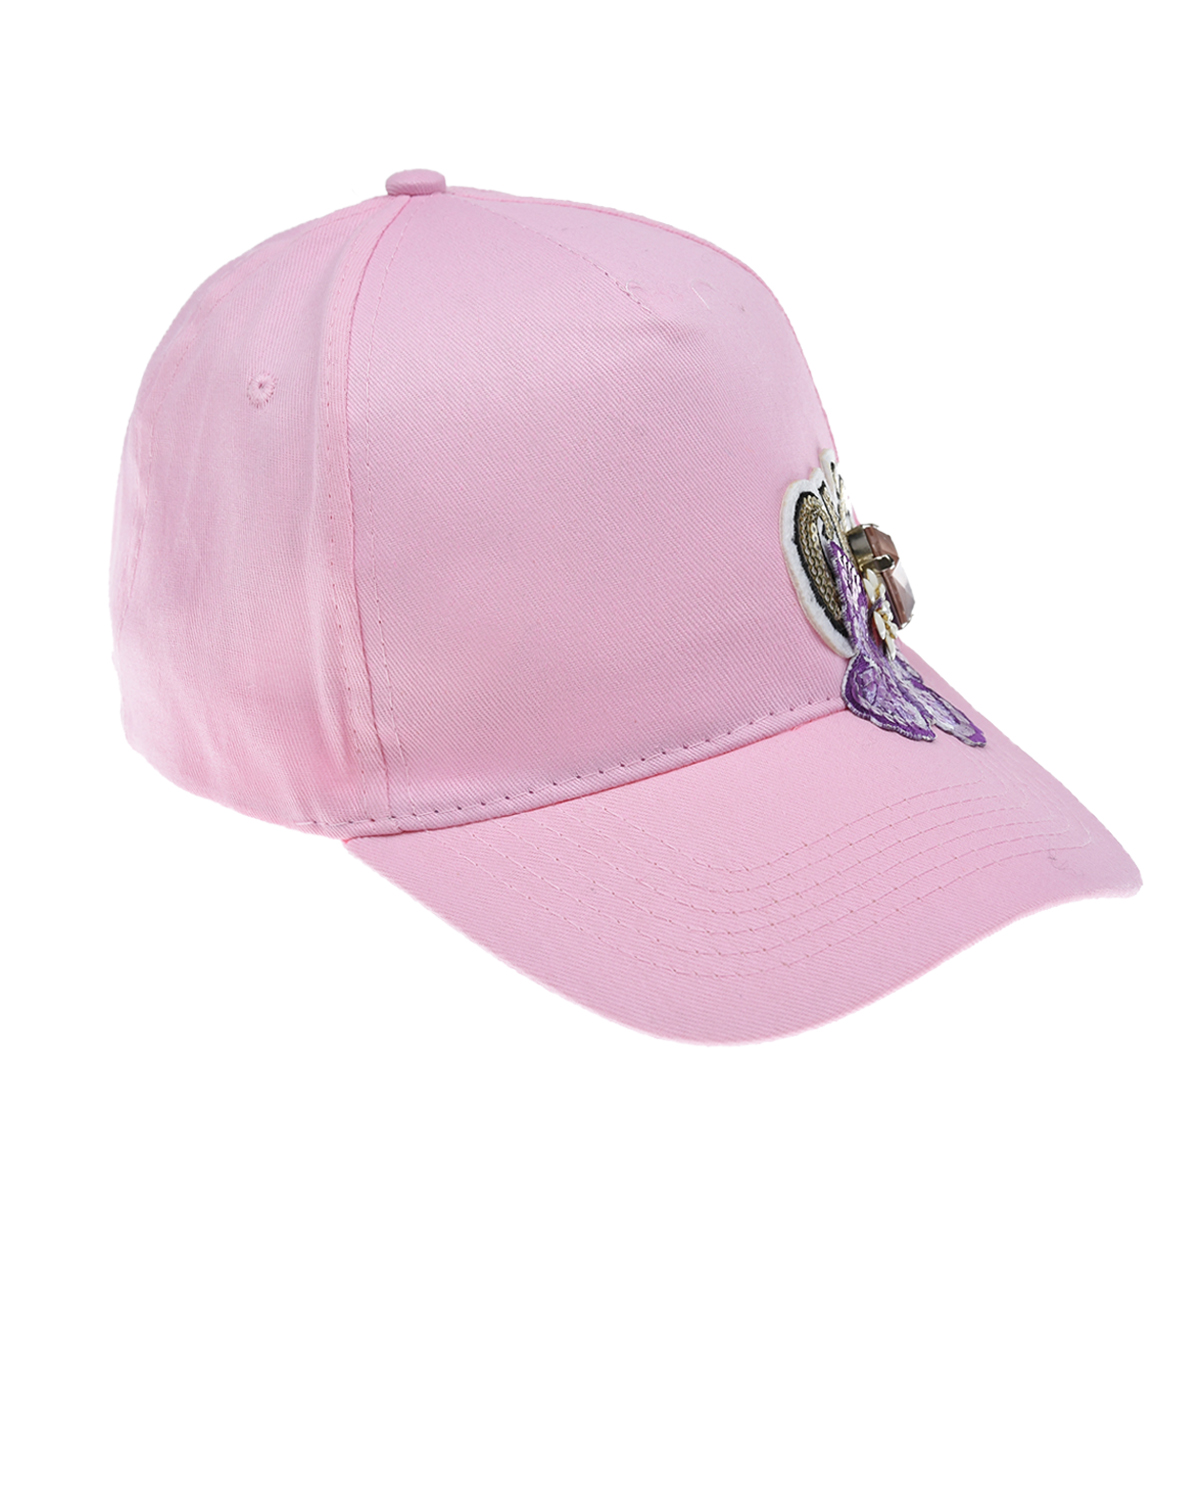 Розовая кепка с аппликацией "бабочка" Regina детская, размер 56, цвет розовый